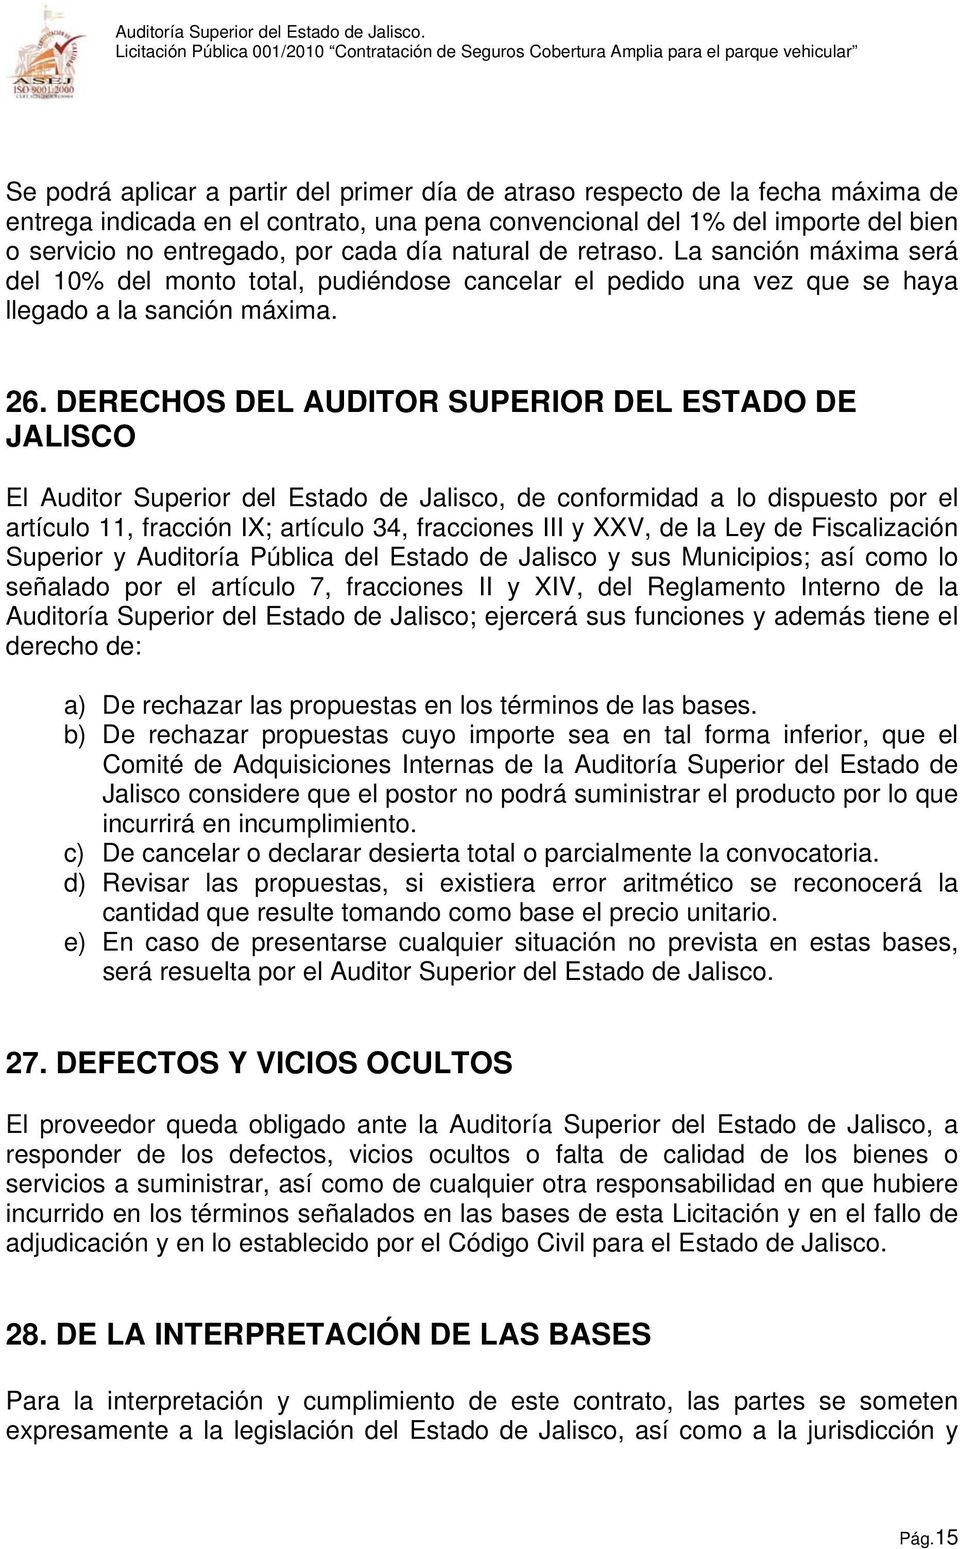 DERECHOS DEL AUDITOR SUPERIOR DEL ESTADO DE JALISCO El Auditor Superior del Estado de Jalisco, de conformidad a lo dispuesto por el artículo 11, fracción IX; artículo 34, fracciones III y XXV, de la